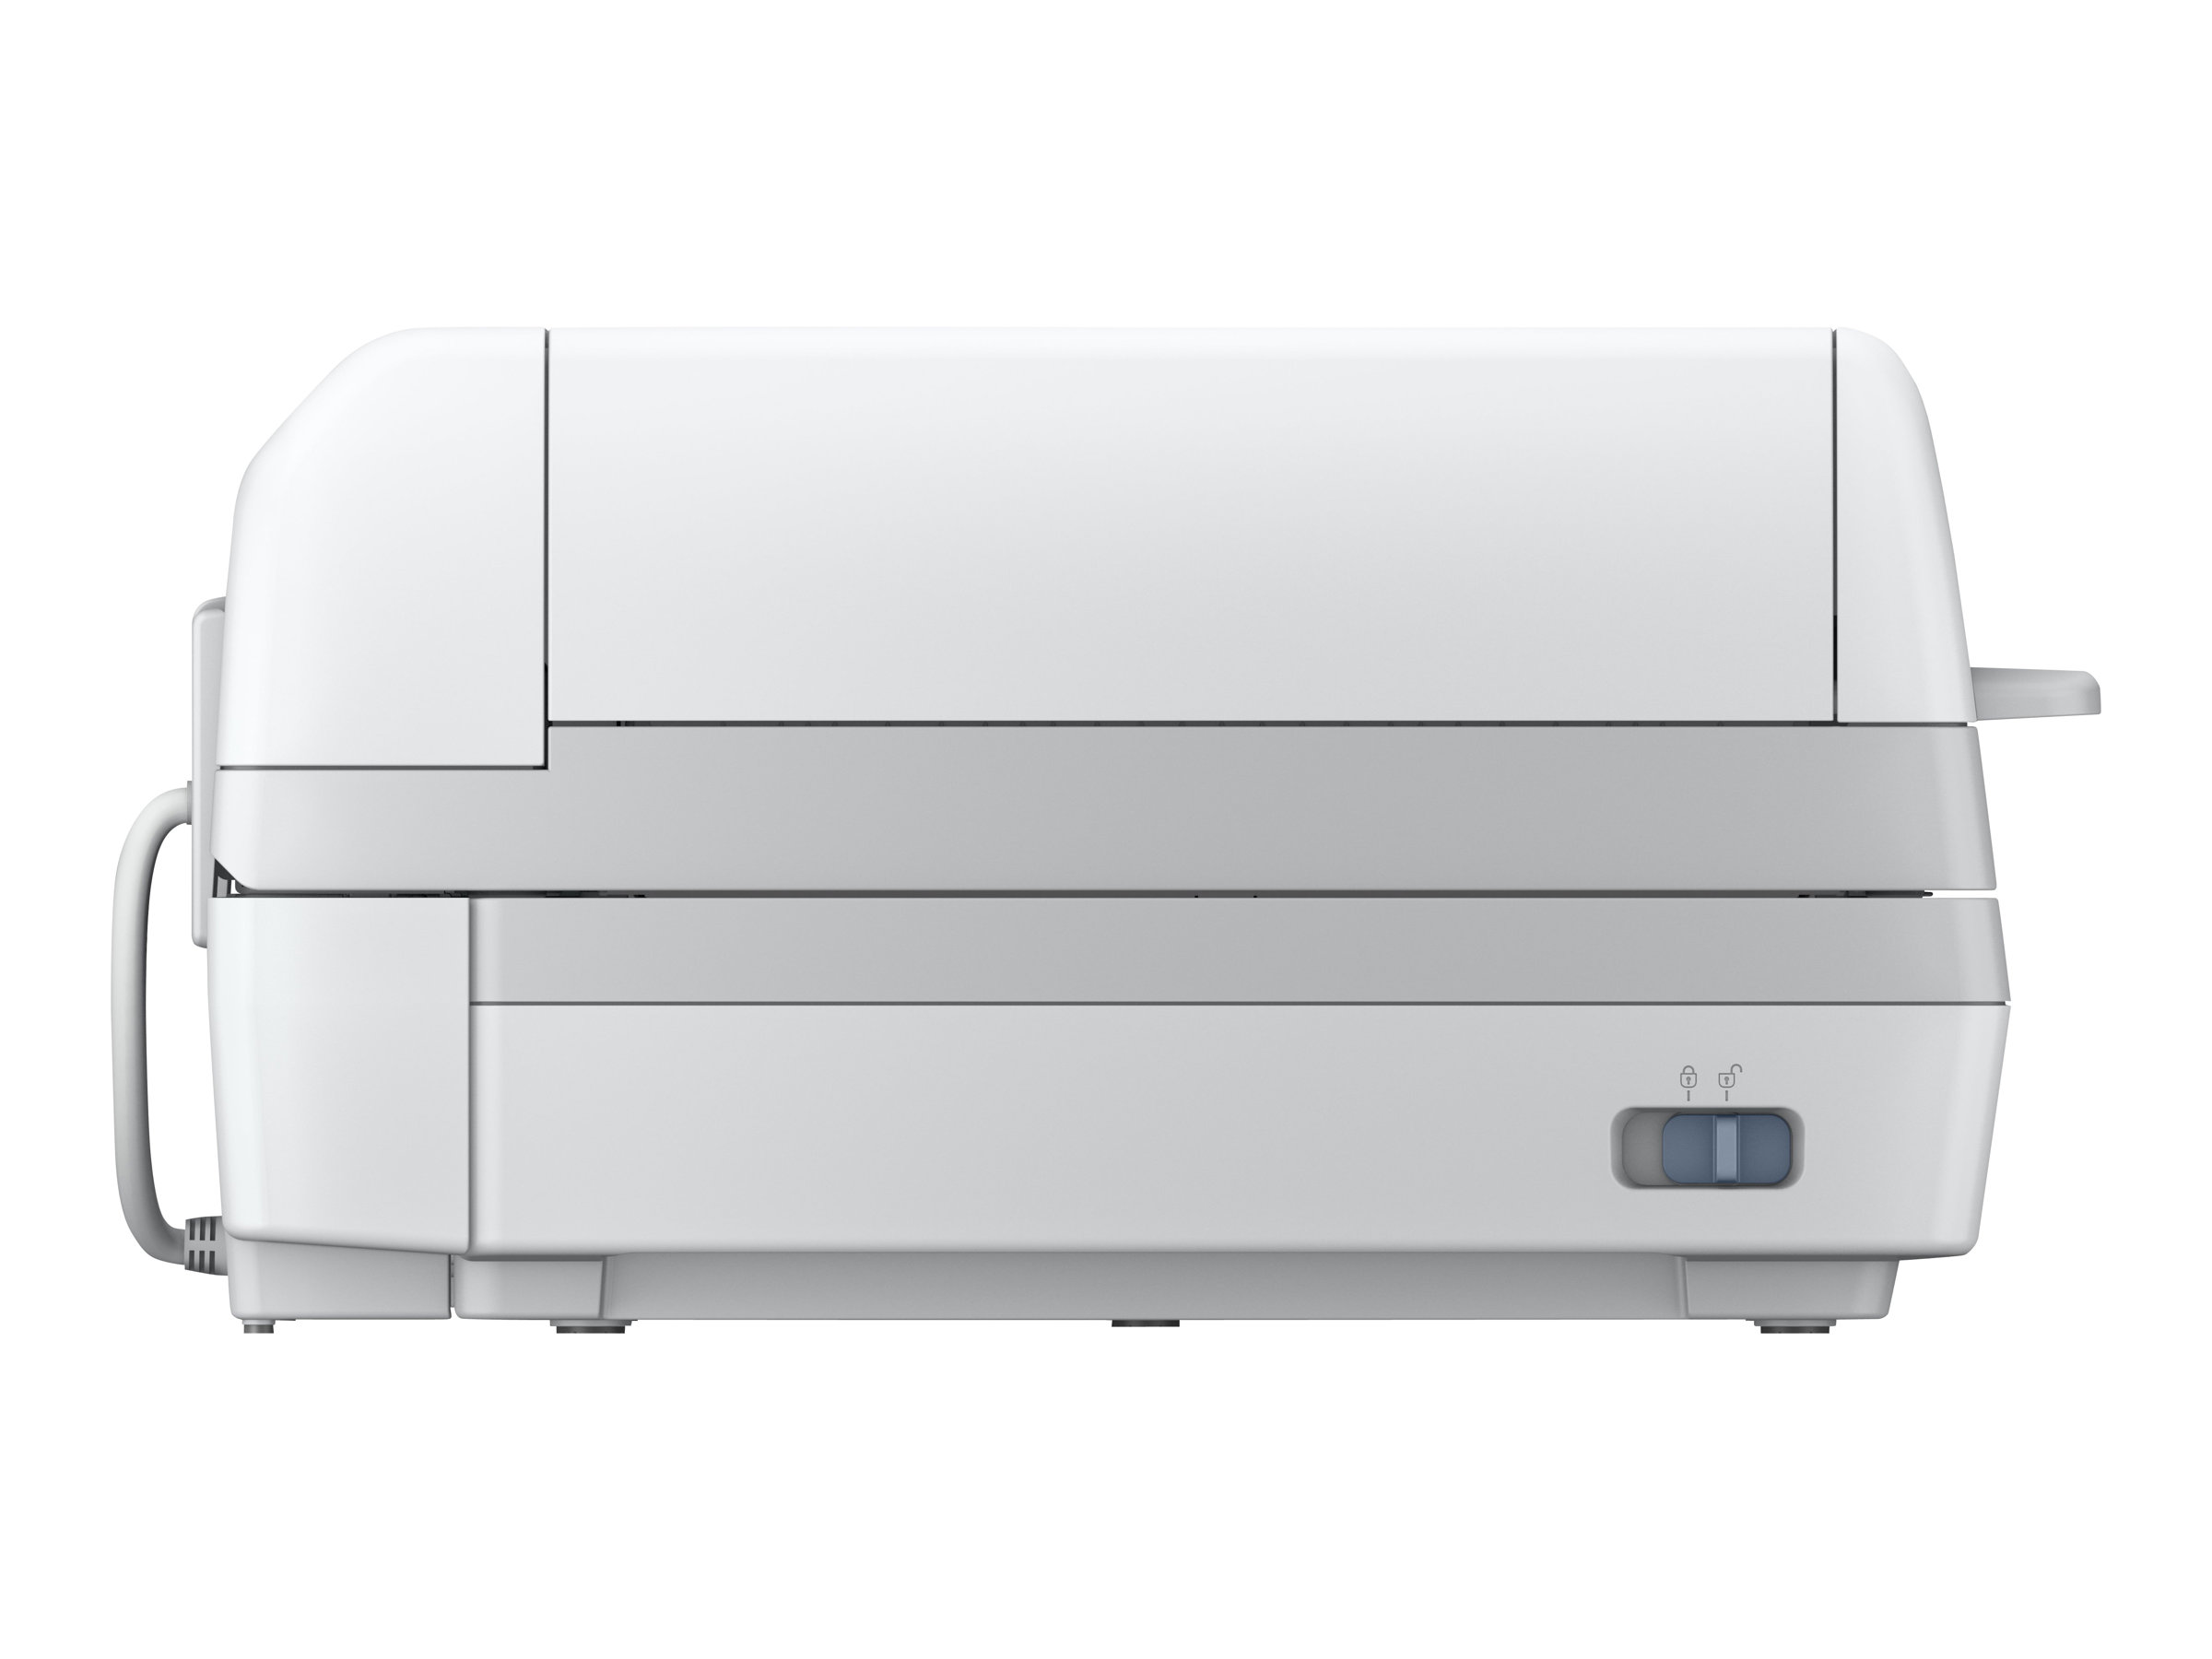 Epson WorkForce DS-60000 - Scanner de documents - Recto-verso - A3 - 600 dpi x 600 dpi - jusqu'à 40 ppm (mono) / jusqu'à 40 ppm (couleur) - Chargeur automatique de documents (200 feuilles) - USB 2.0 - B11B204231 - Scanneurs de documents